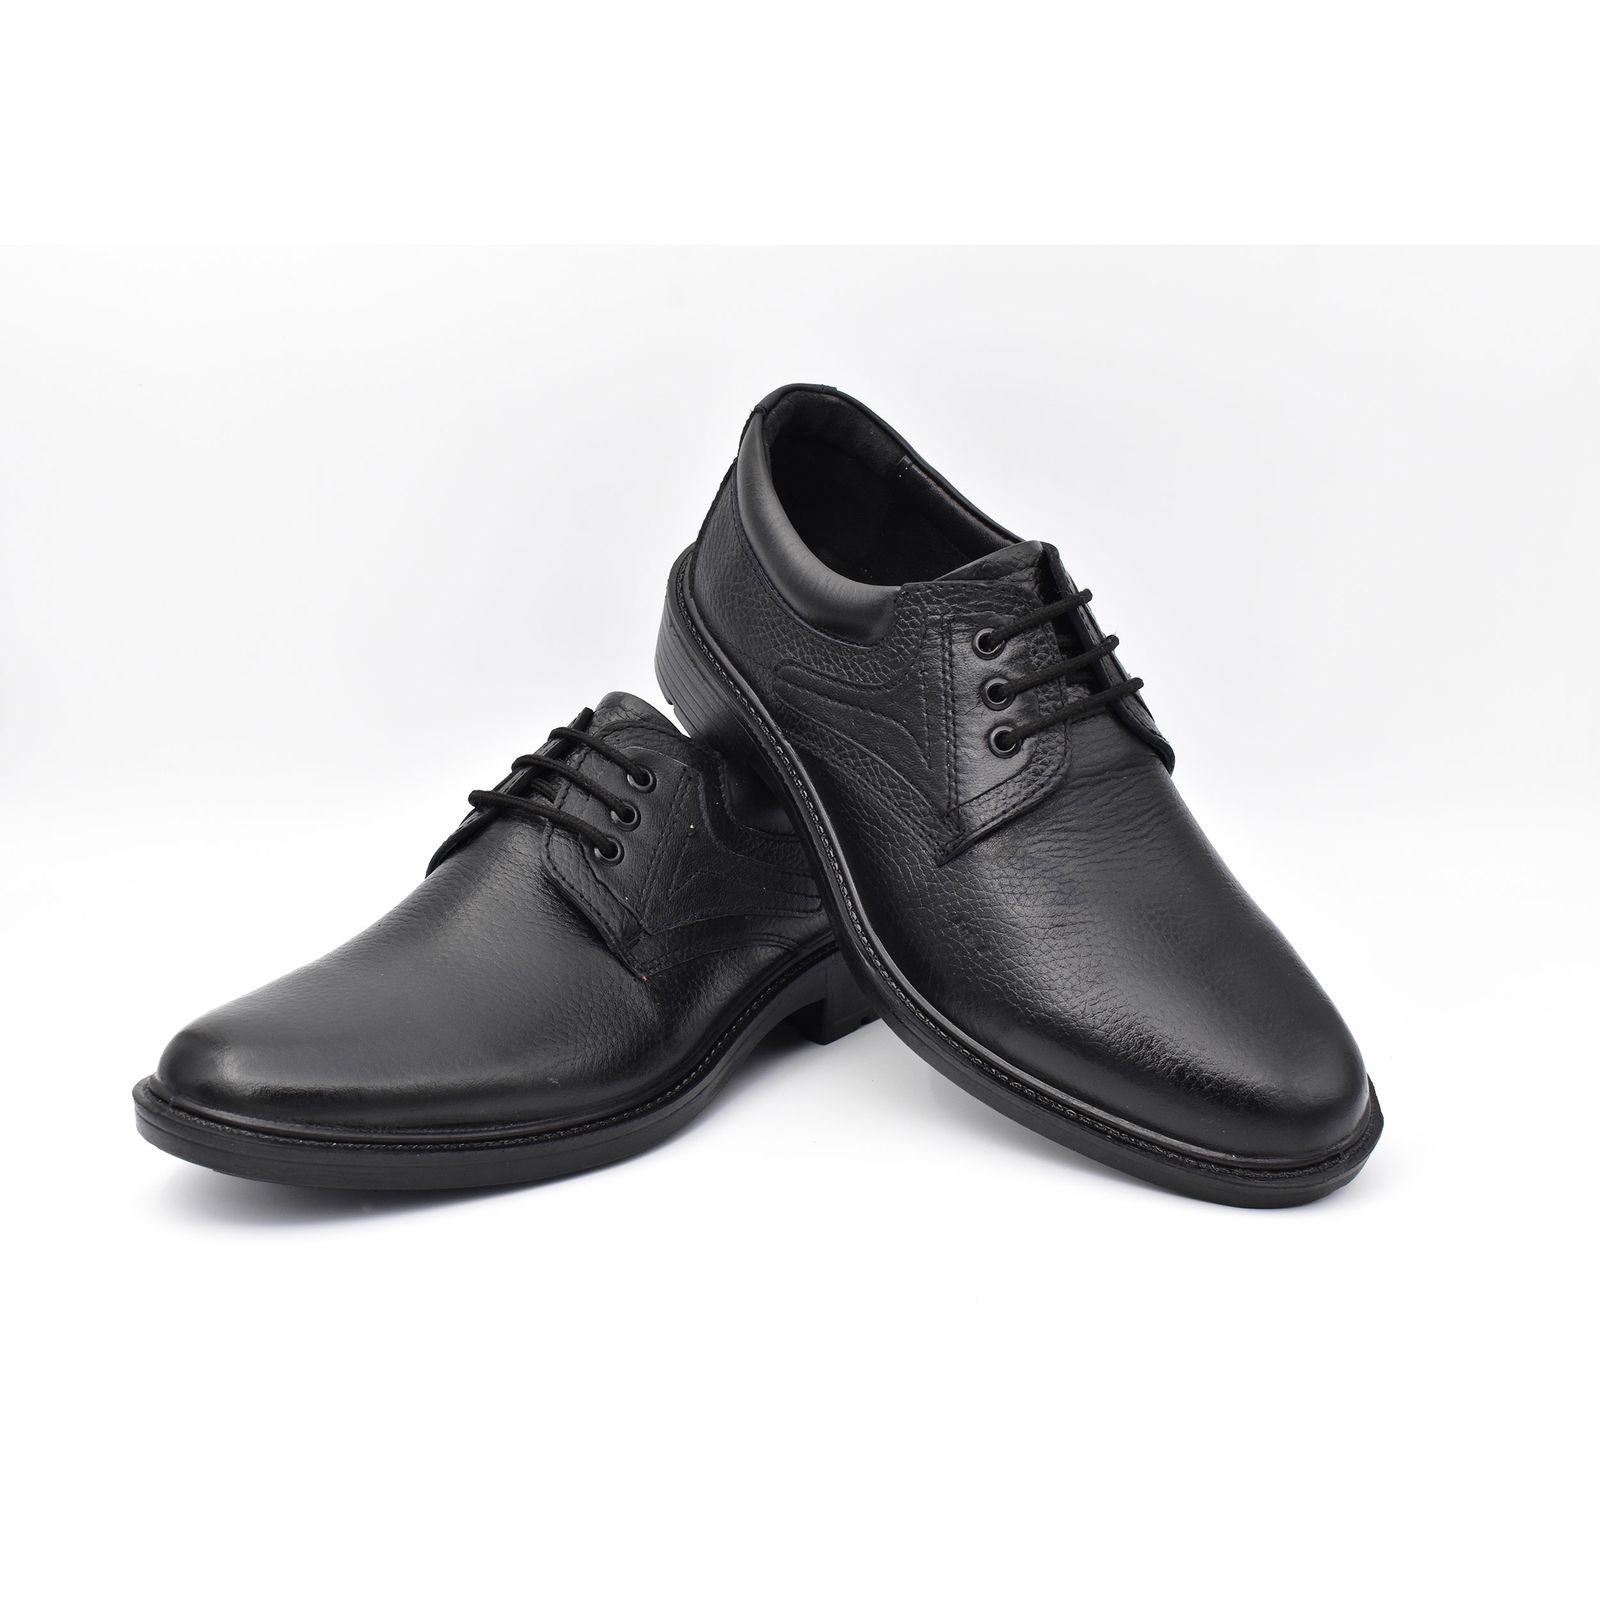 کفش مردانه پاما مدل Morano کد G1174 -  - 5